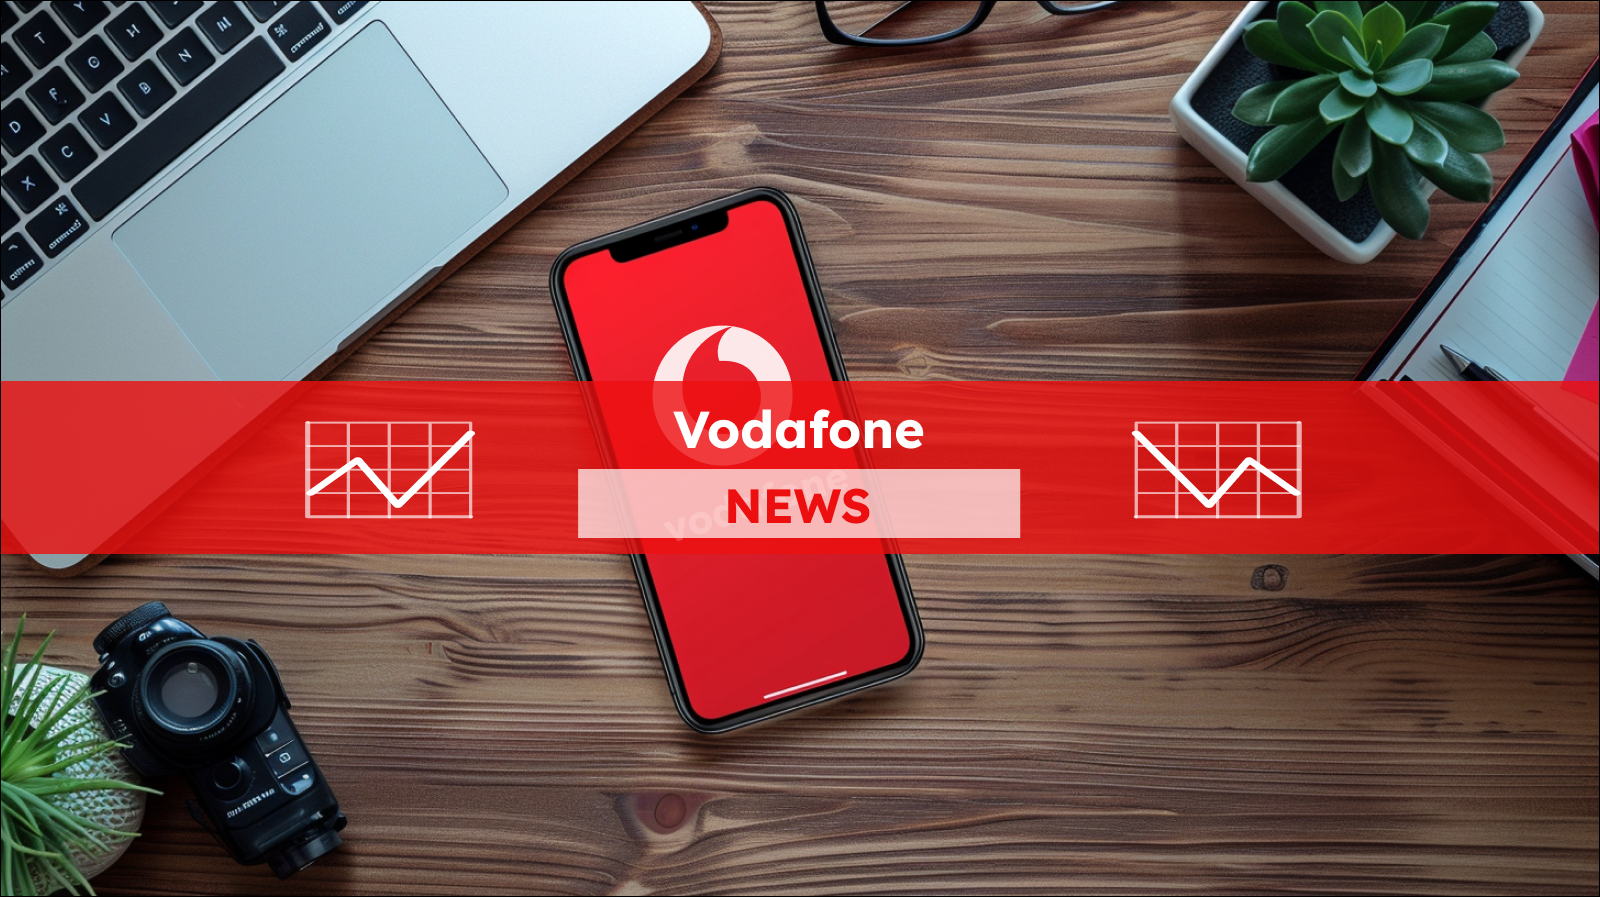 Ein Smartphone mit dem Vodafone-Logo auf dem Bildschirm liegt neben einem Laptop, einer Kamera und anderen Bürogegenständen auf einem Holztisch, mit einem Vodafone NEWS Banner